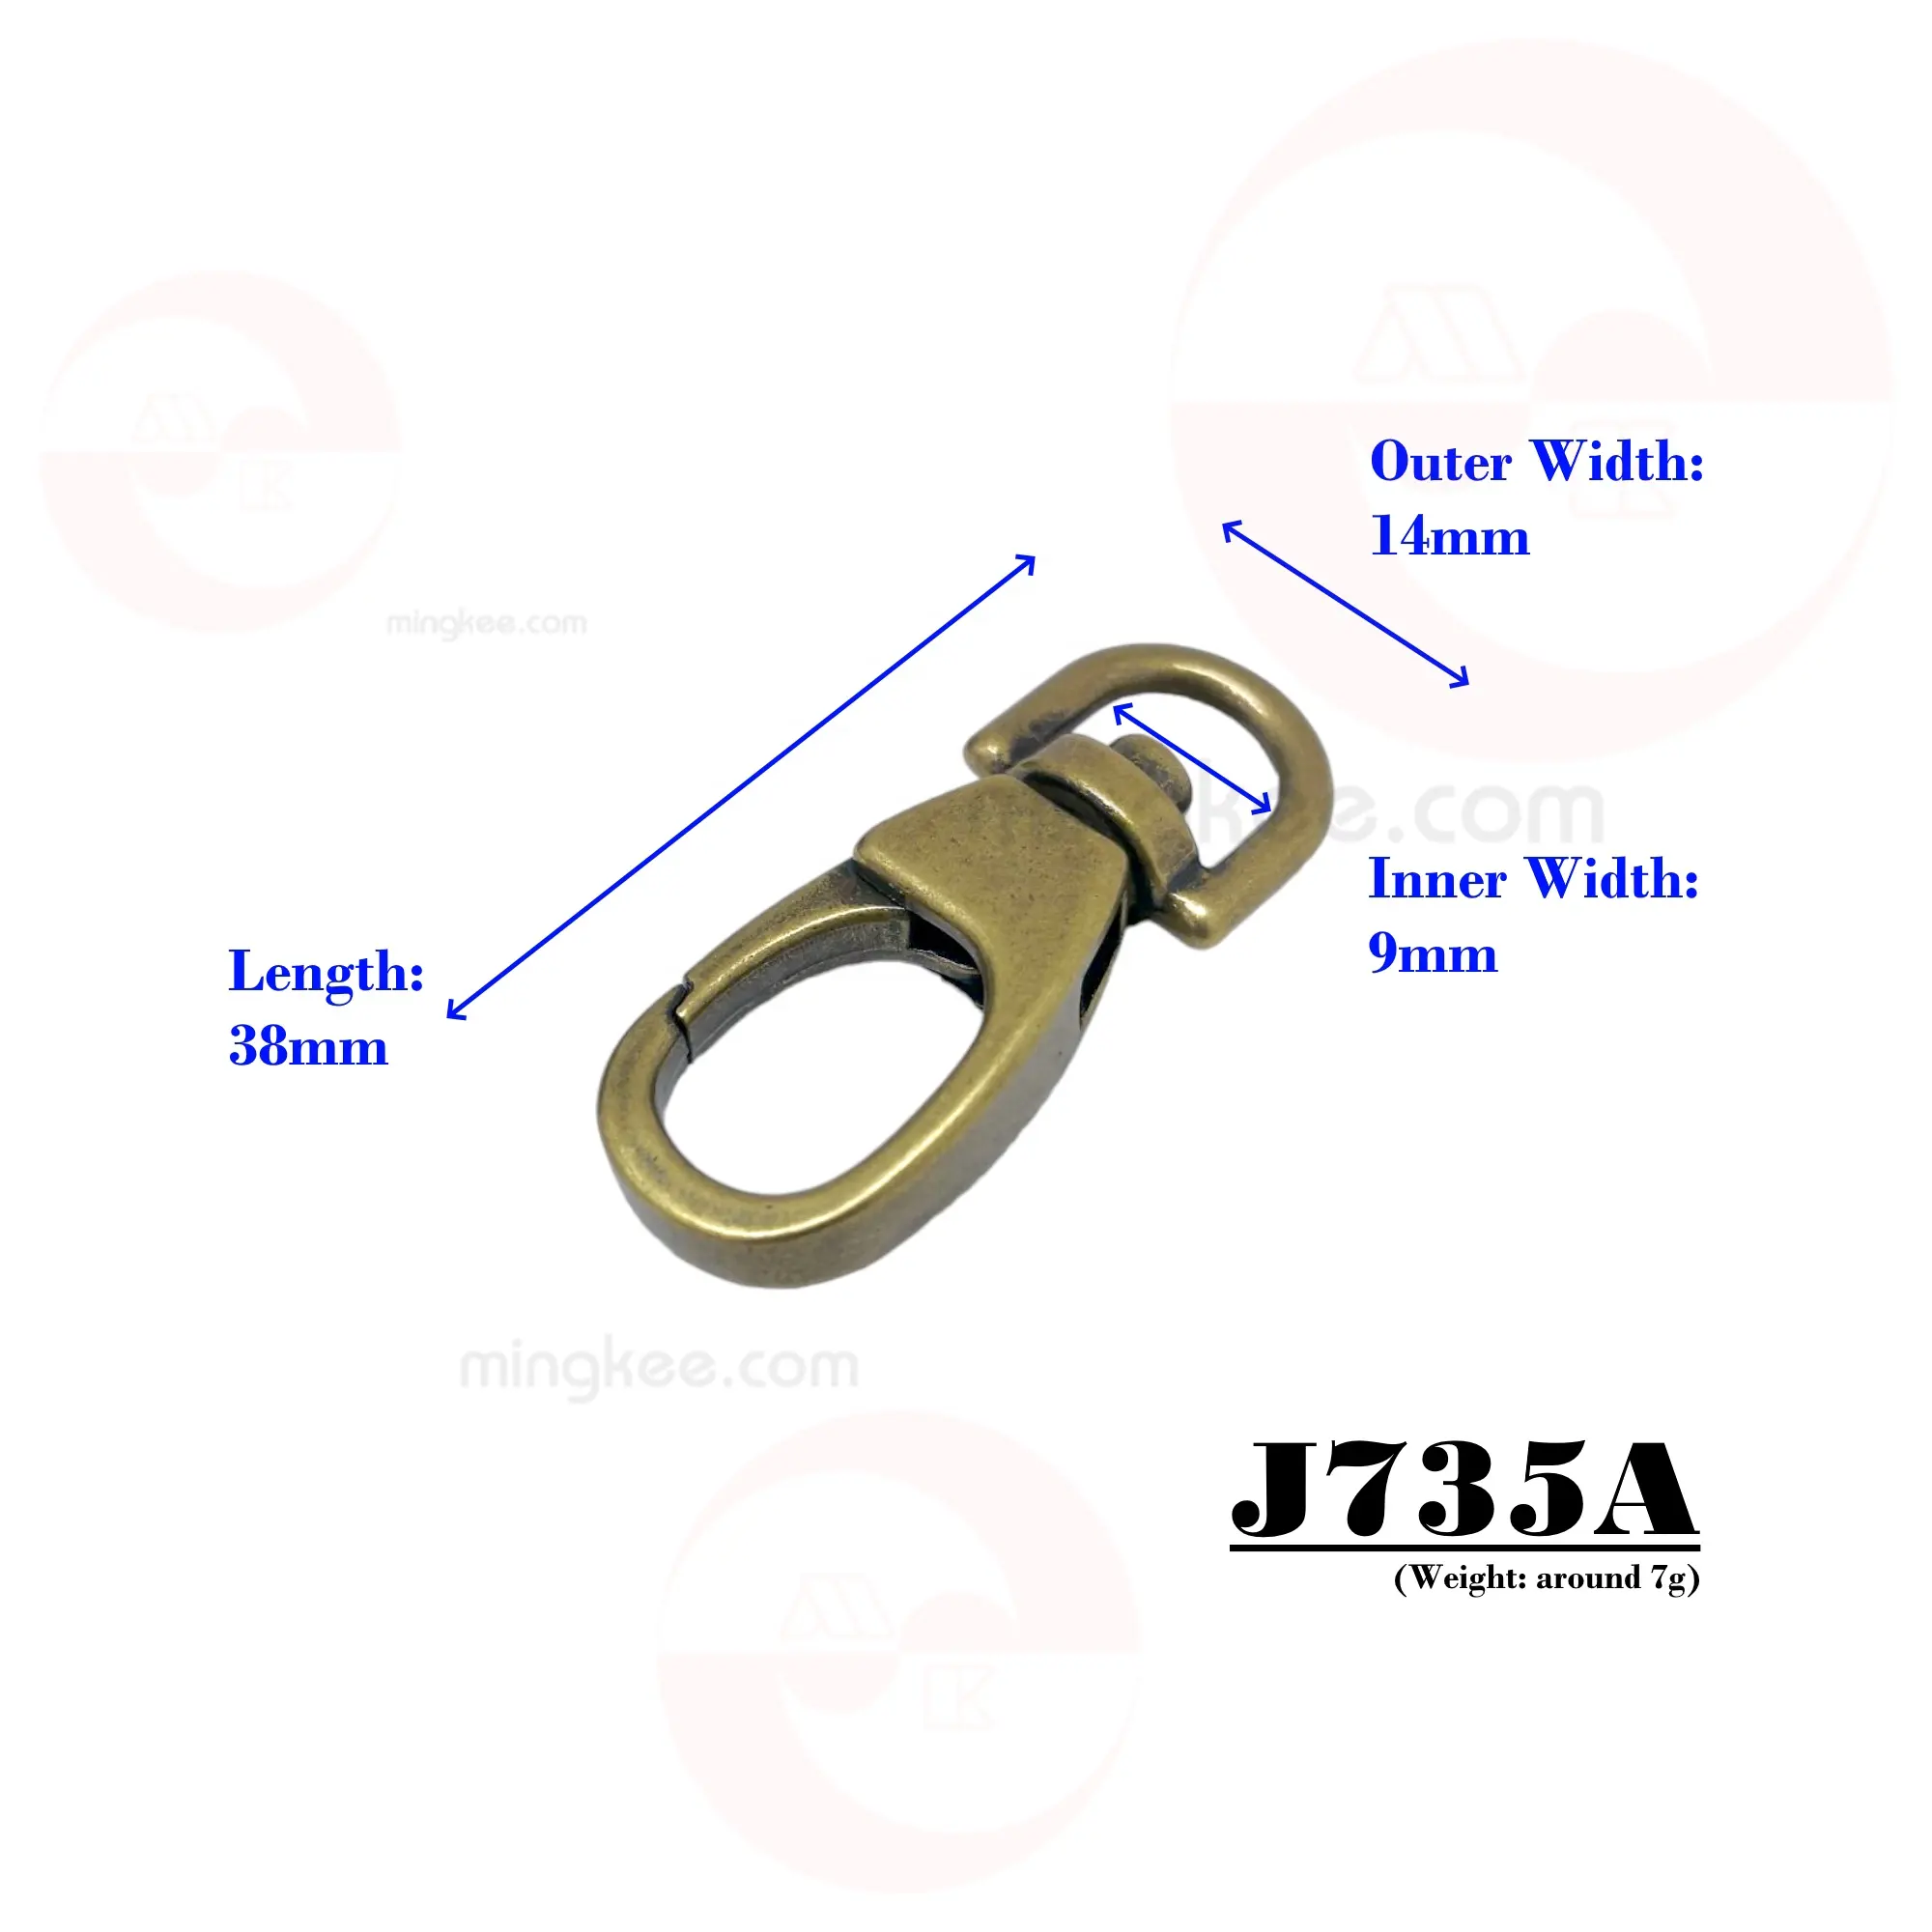 MING KEE METAL 9mm estilo redondo Aleación de Zinc accesorios de Metal piezas bolso artículos de cuero uso Metal Snap Dog Hook